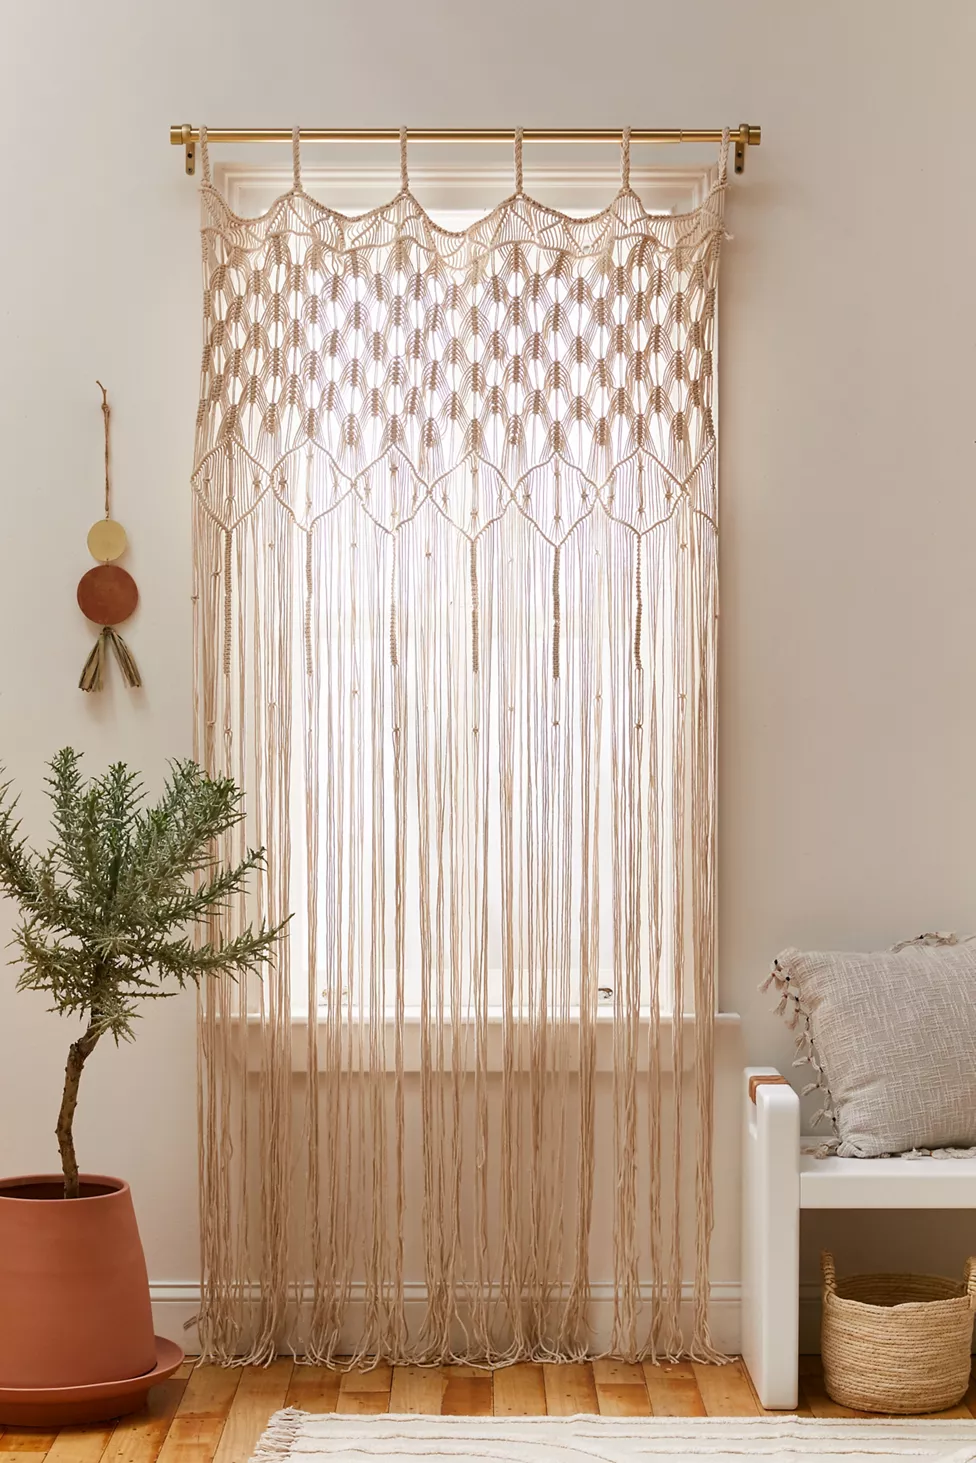 Buy A Beautiful Macrame Curtain